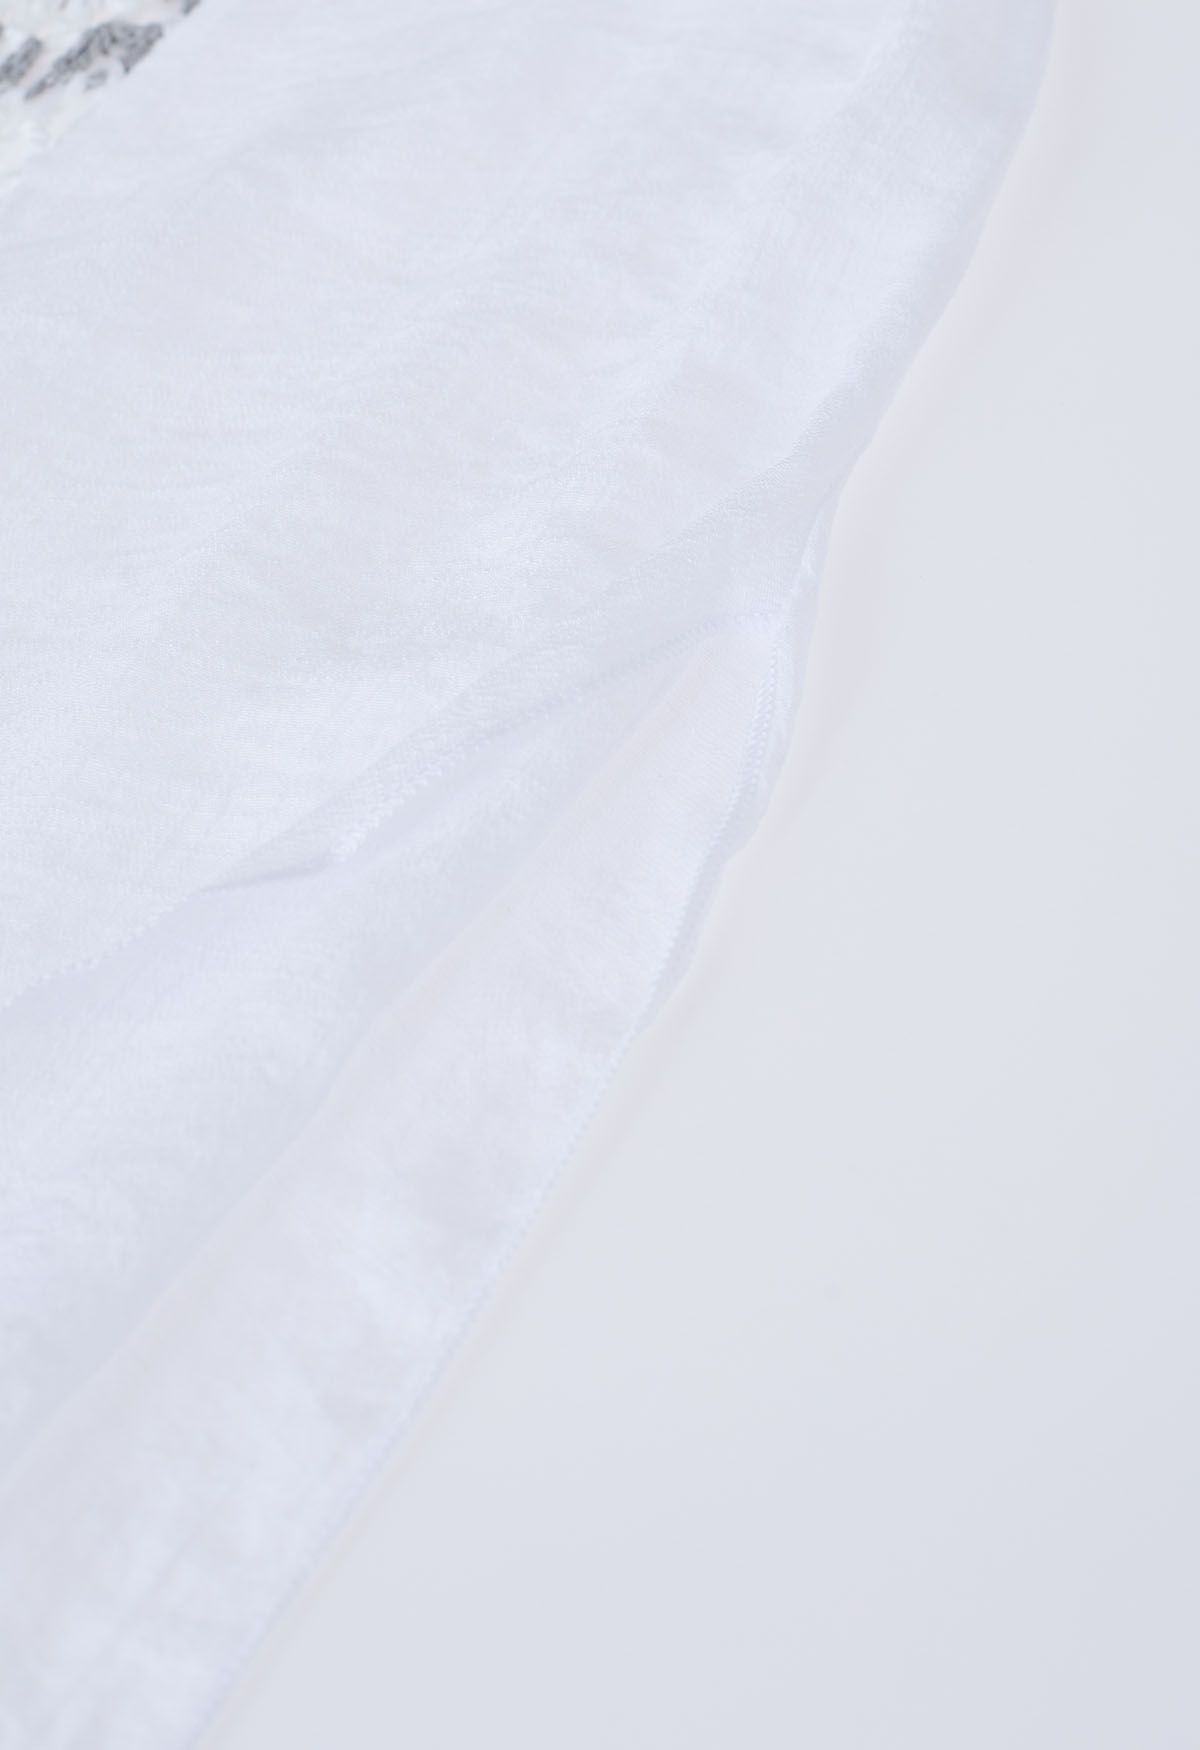 Bunter gehäkelter Quasten-Kimono in Weiß